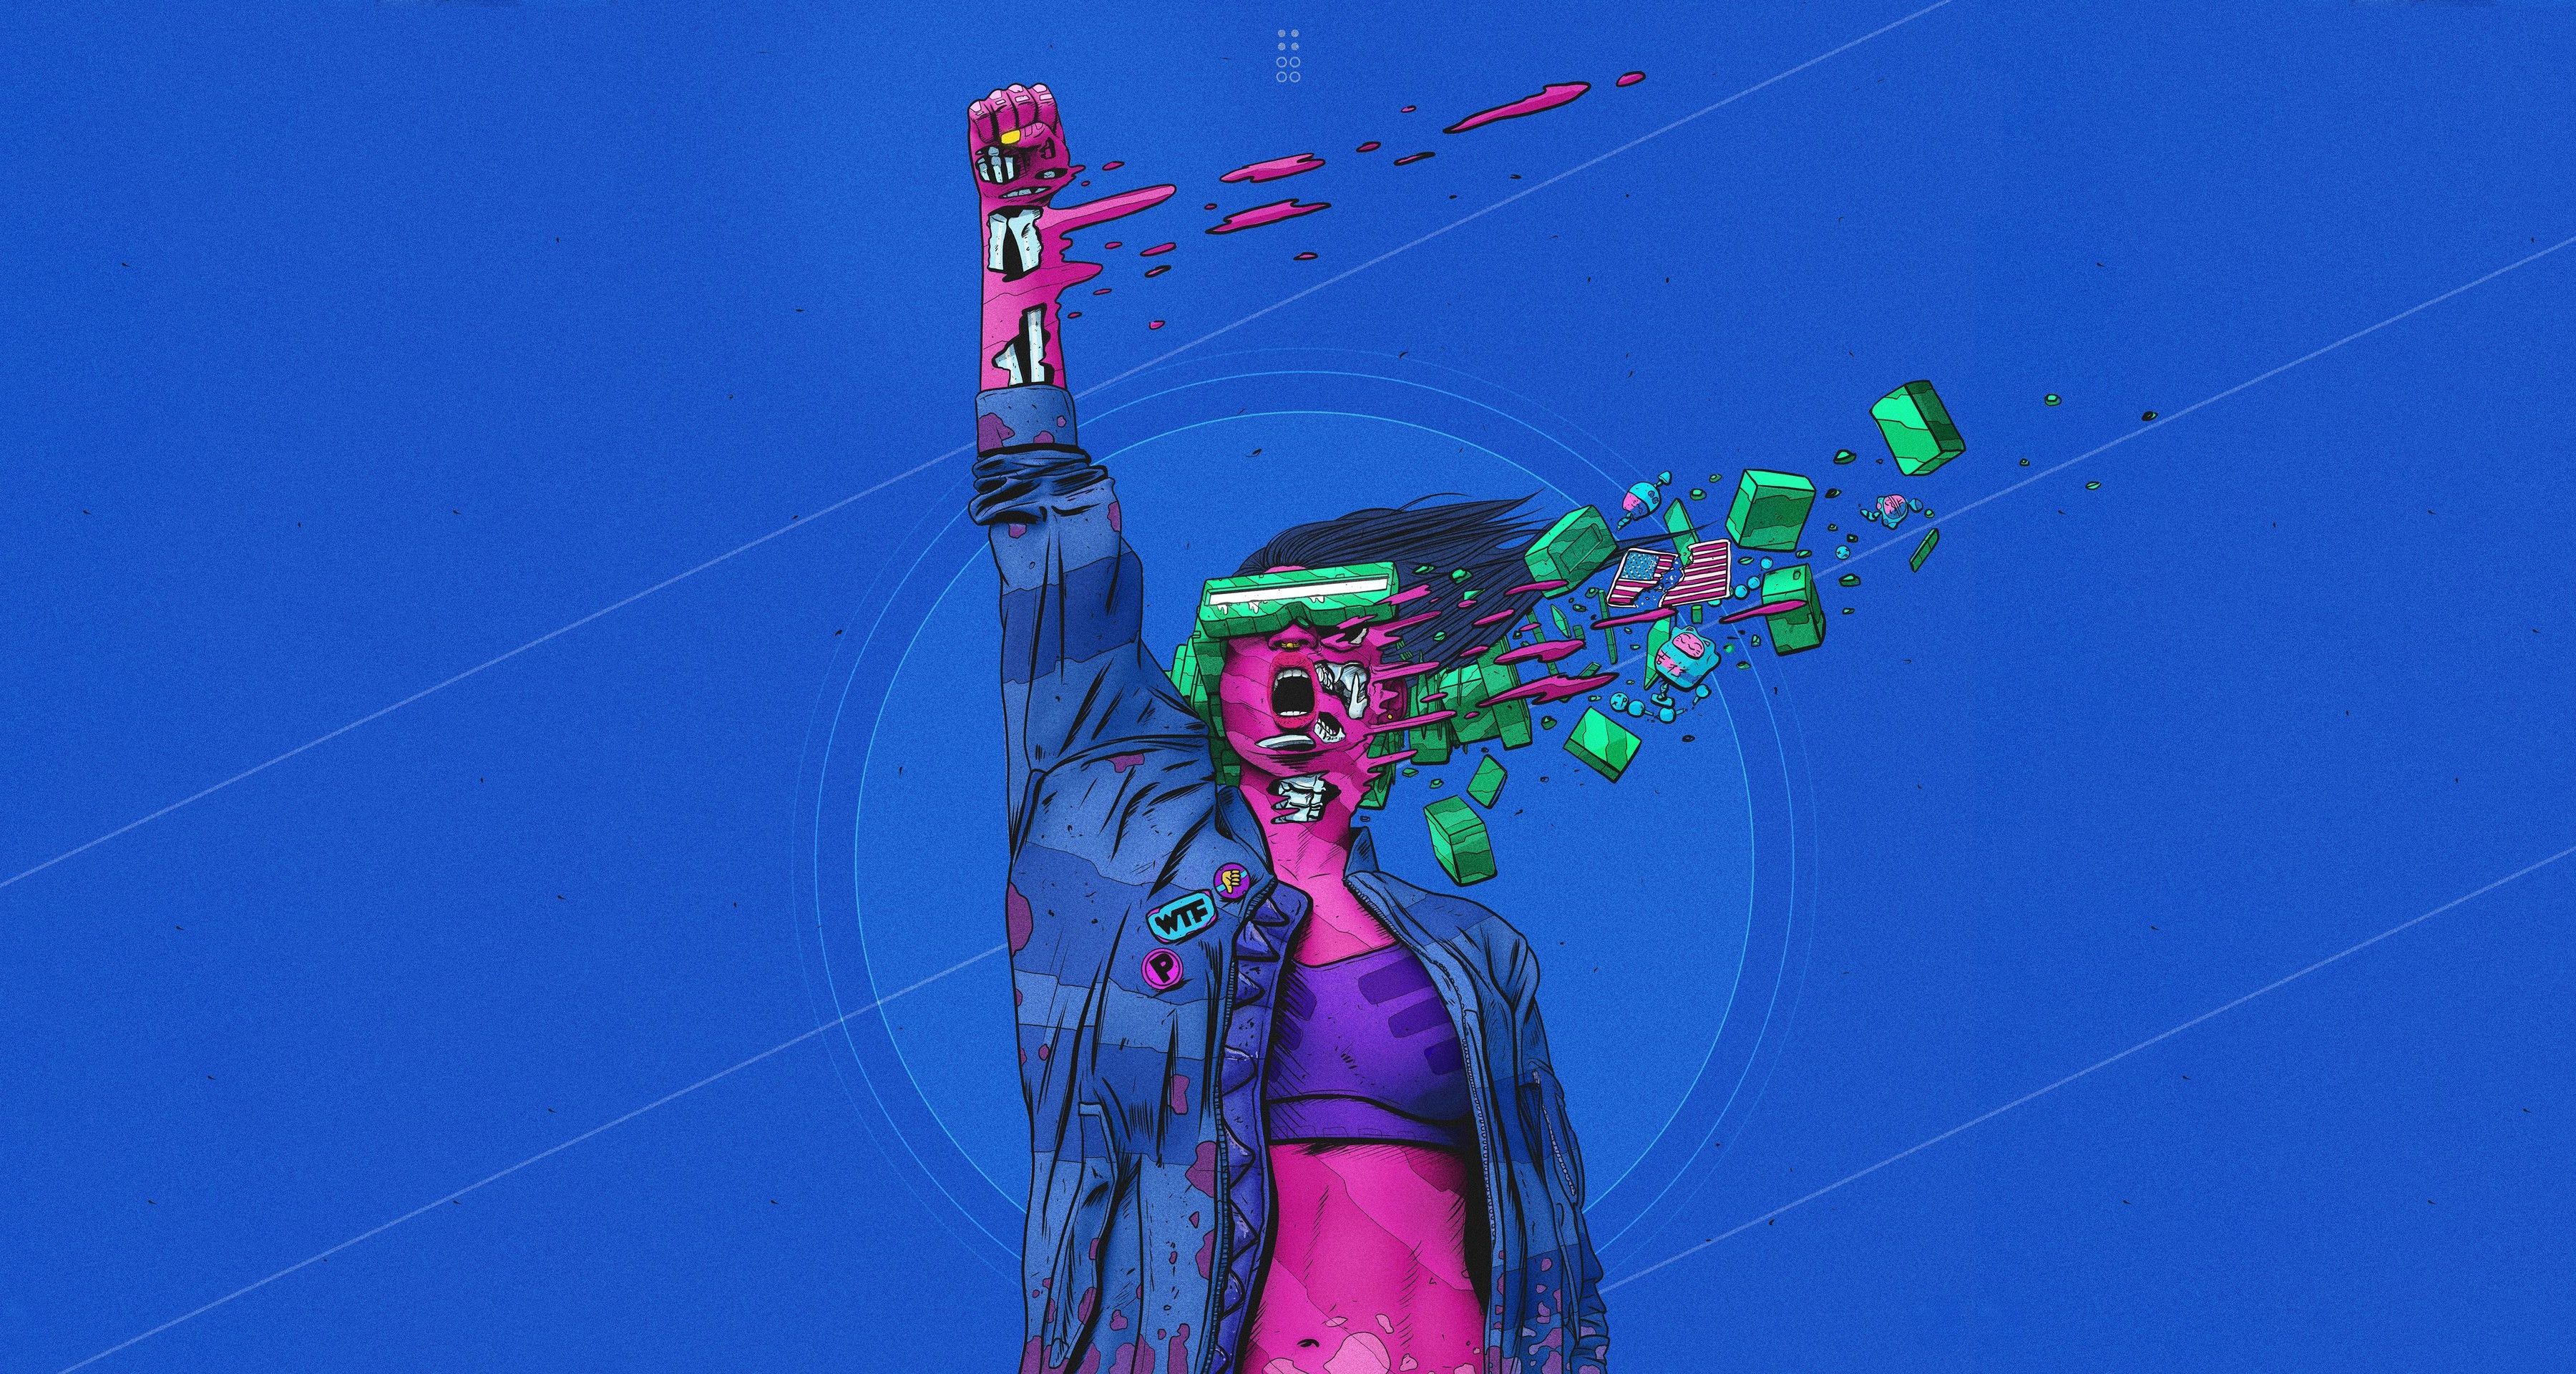 Surreal Cyberpunk Artwork 1440x900 Wallpaper, HD Artist